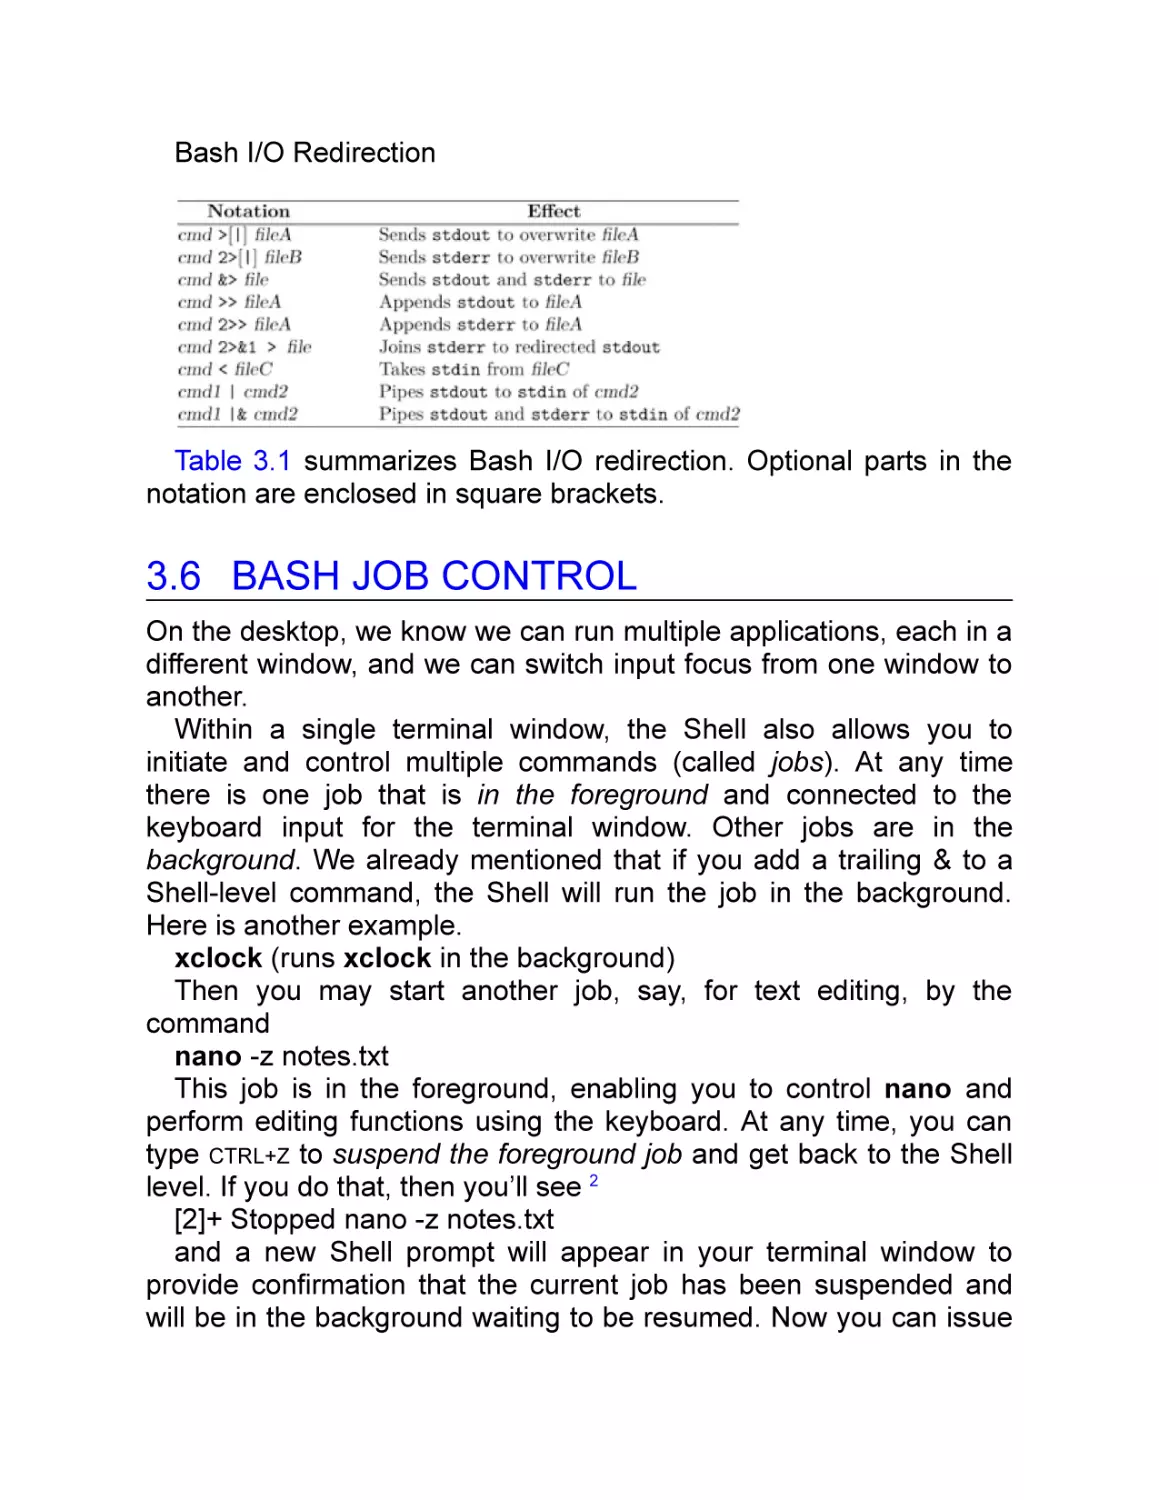 3.6 Bash Job Control